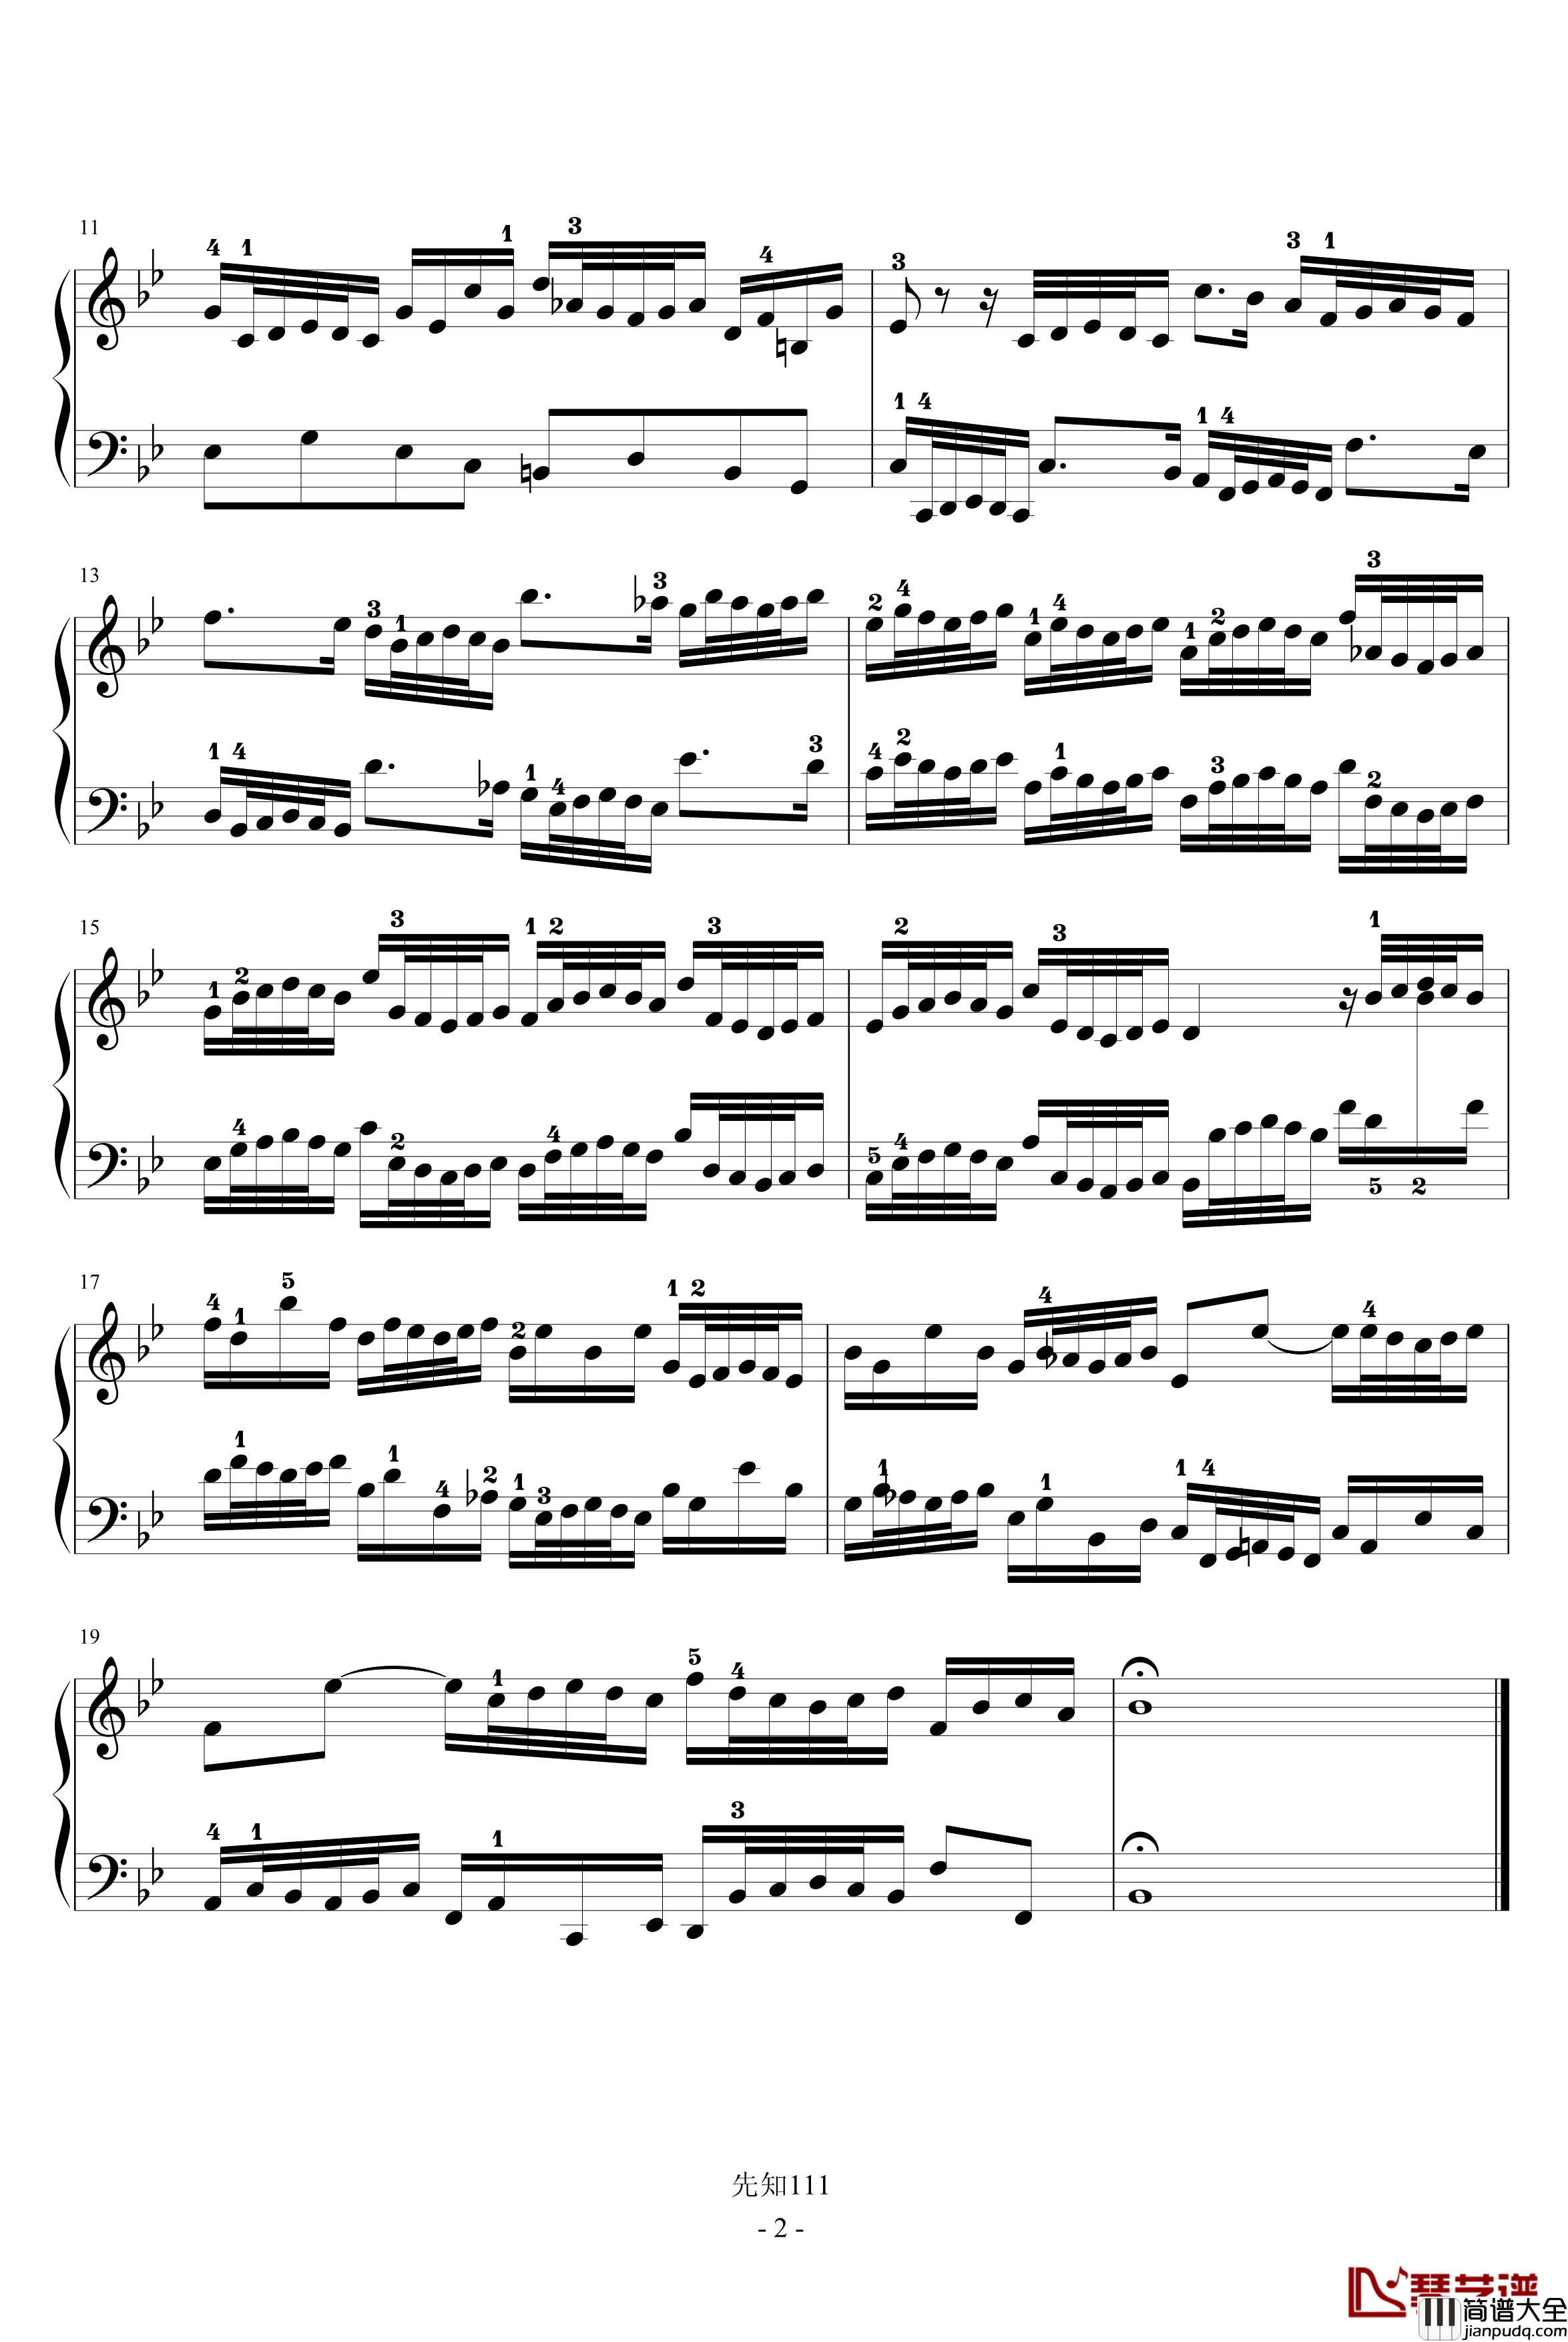 二部创意曲NO.14钢琴谱_有指法_巴赫_P.E.Bach